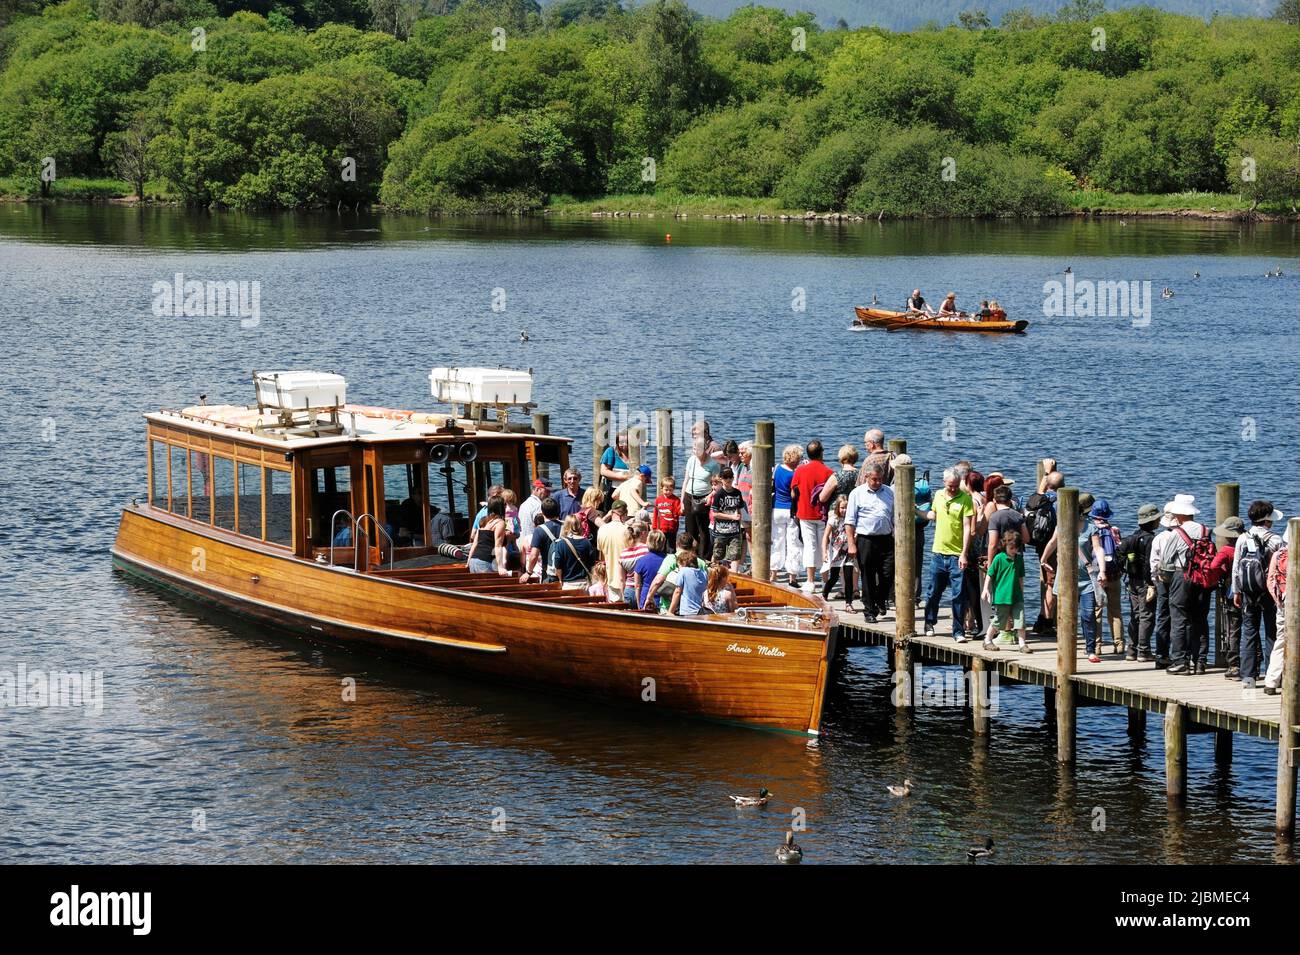 Los turistas que se embarca en un barco de placer en Derwent Water cerca de Keswick en el Distrito de los Lagos Cumbria Reino Unido Foto de stock